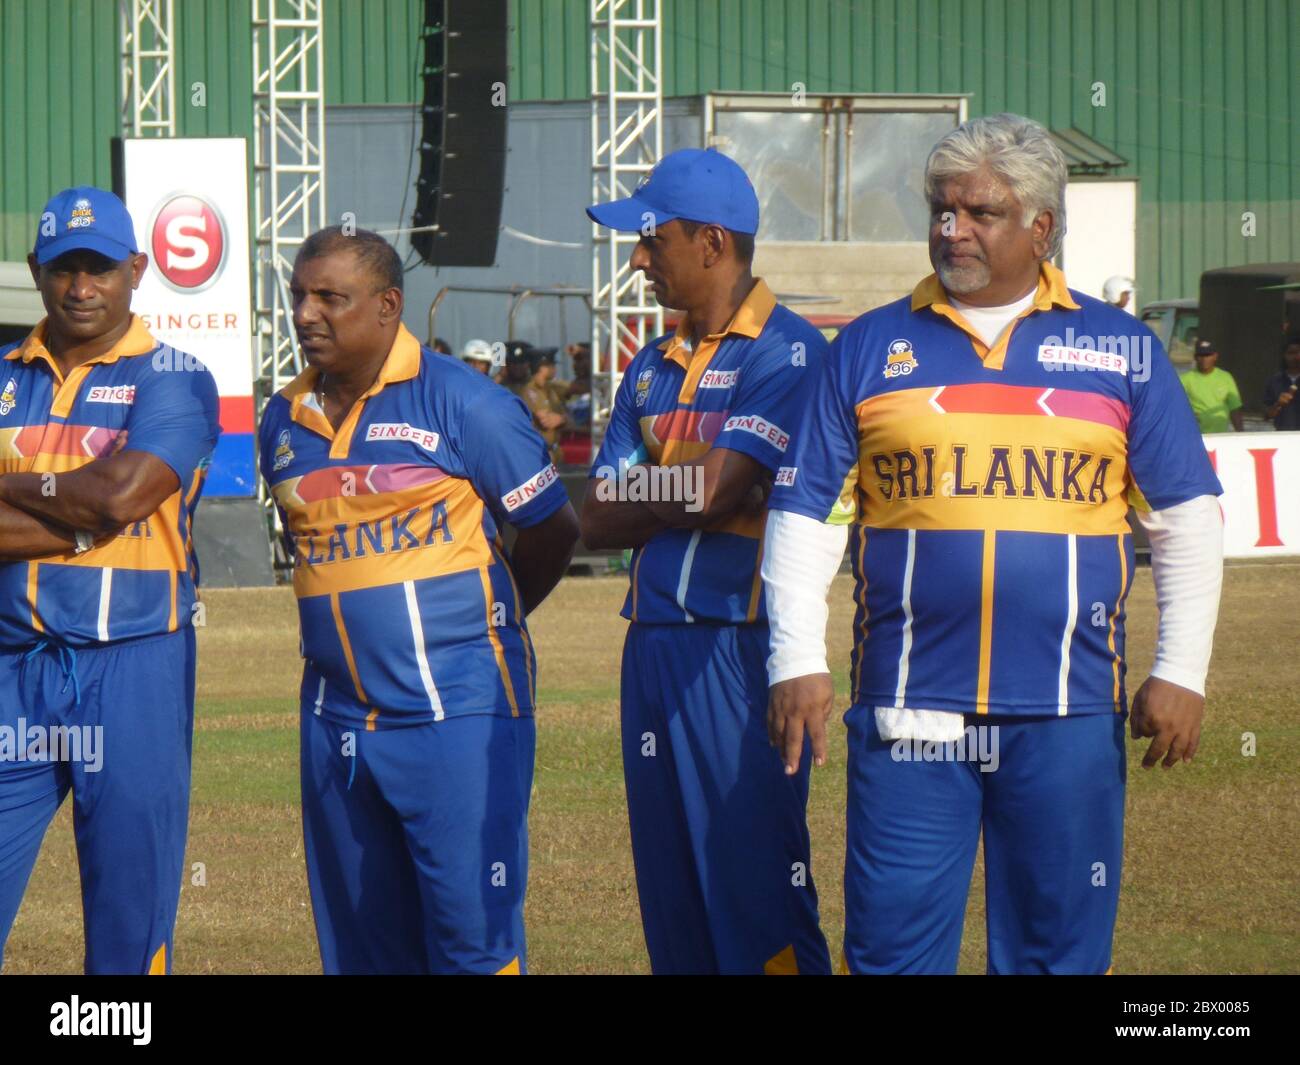 Ehemalige Sri Lanka Cricket World Cup Gewinner aus 1996. In einem freundlichen Spiel, um Mittel für weniger glückliche Kricketspieler zu sammeln. Von links: Sanath Jayasuriya, Aravinda De Silva, Upul Chandana und Captain Arjuna Ranatunga. Stockfoto